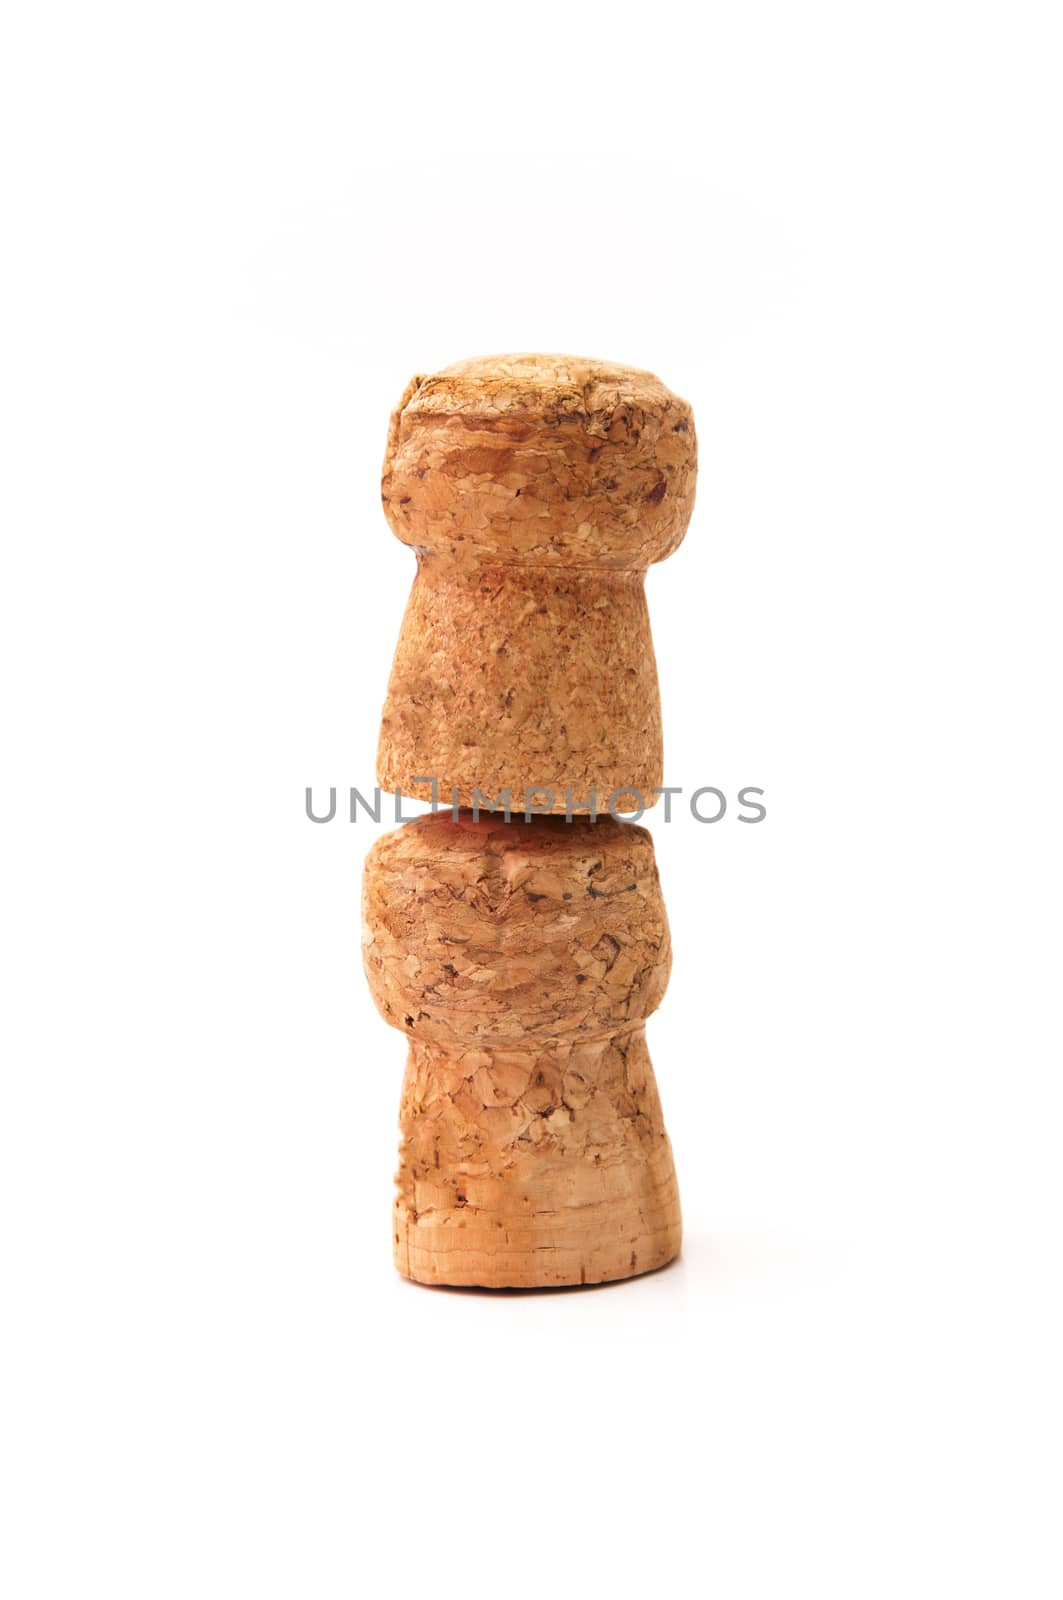 corks  by arnau2098